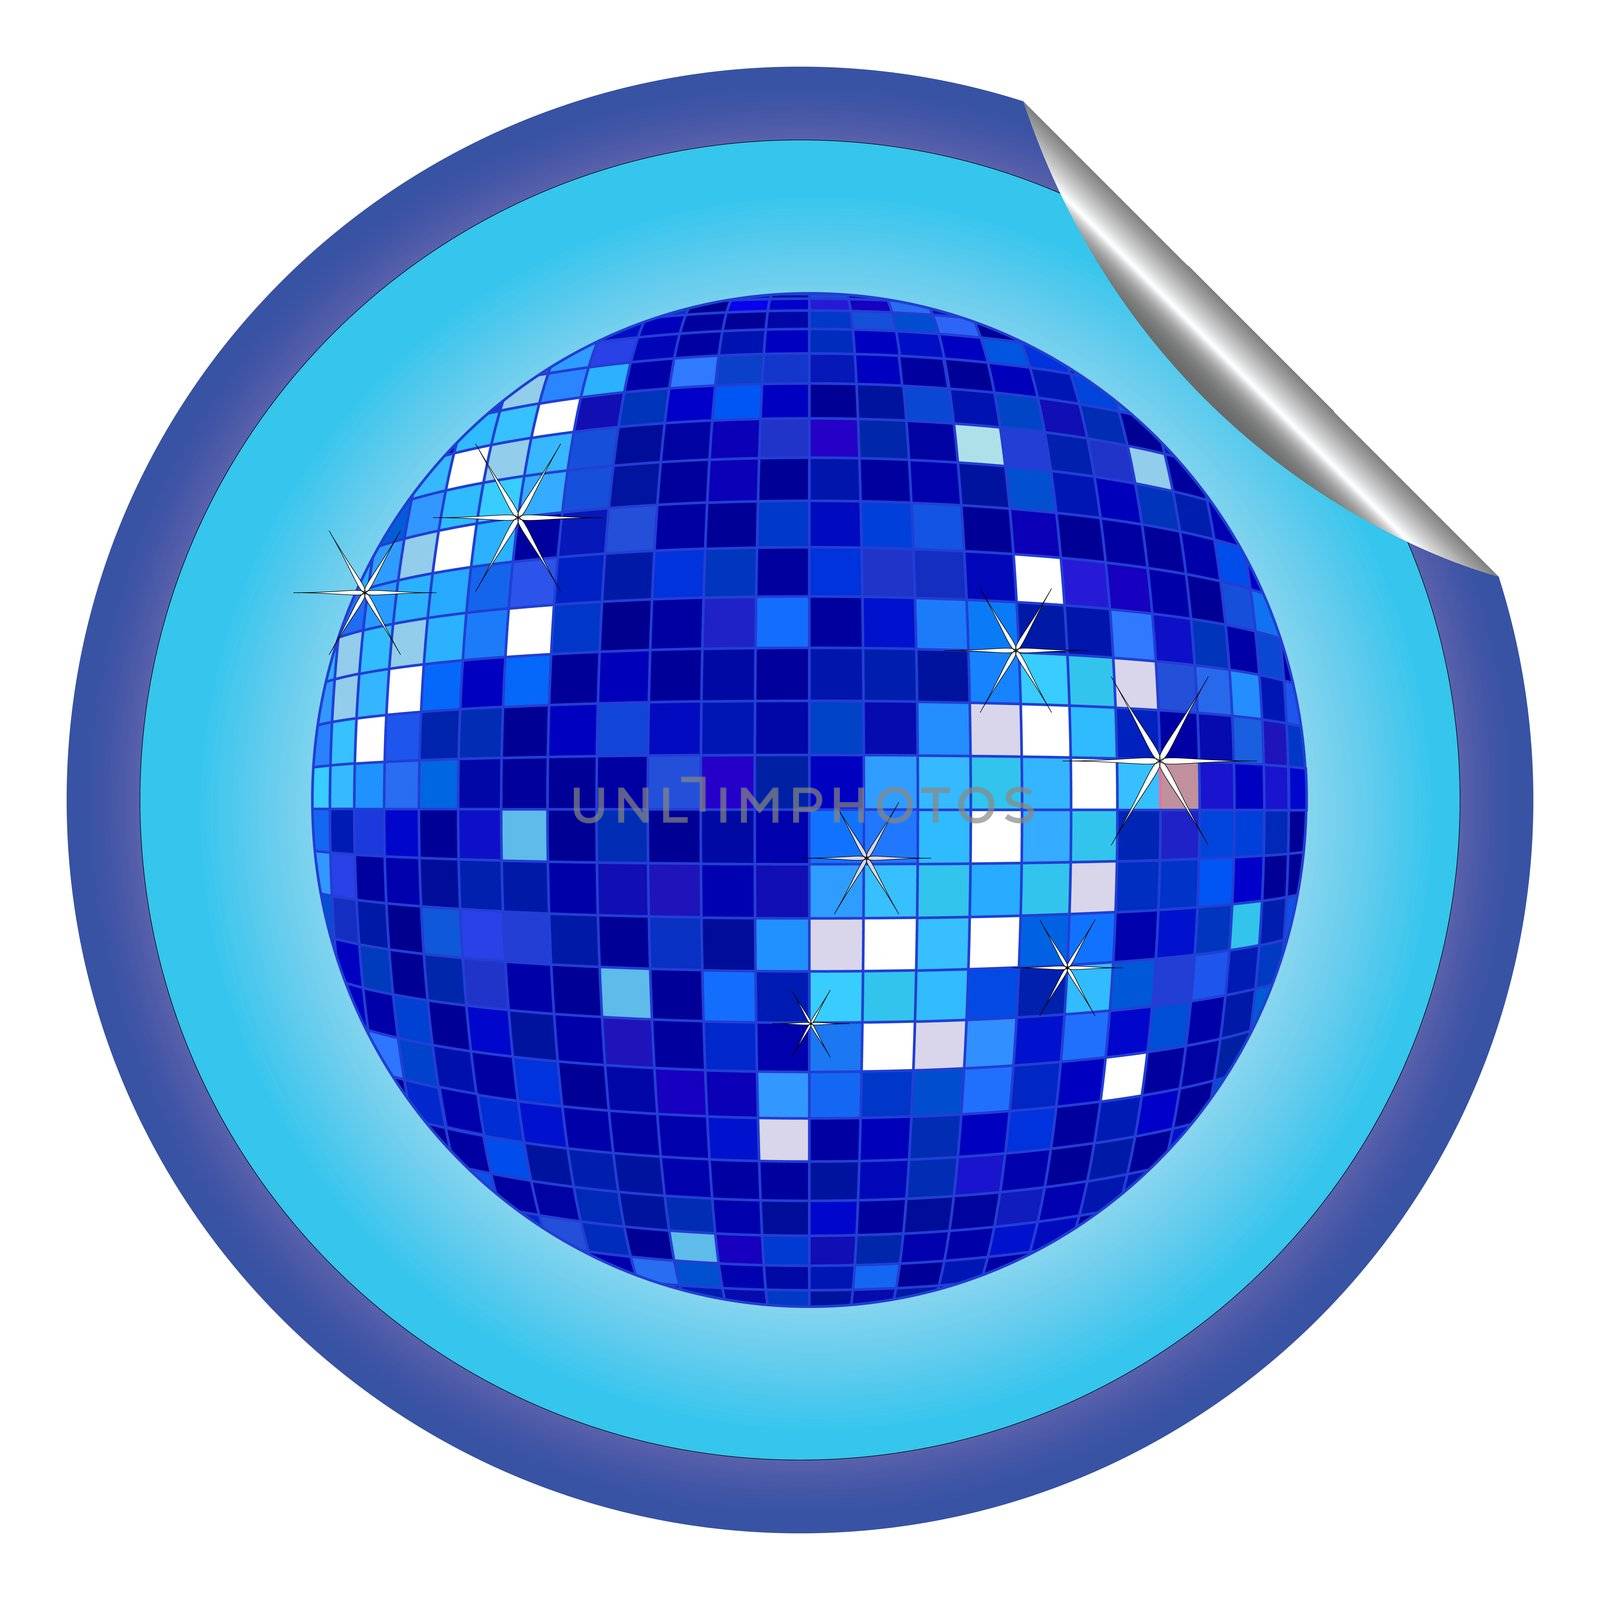 disco ball blue sticker by robertosch